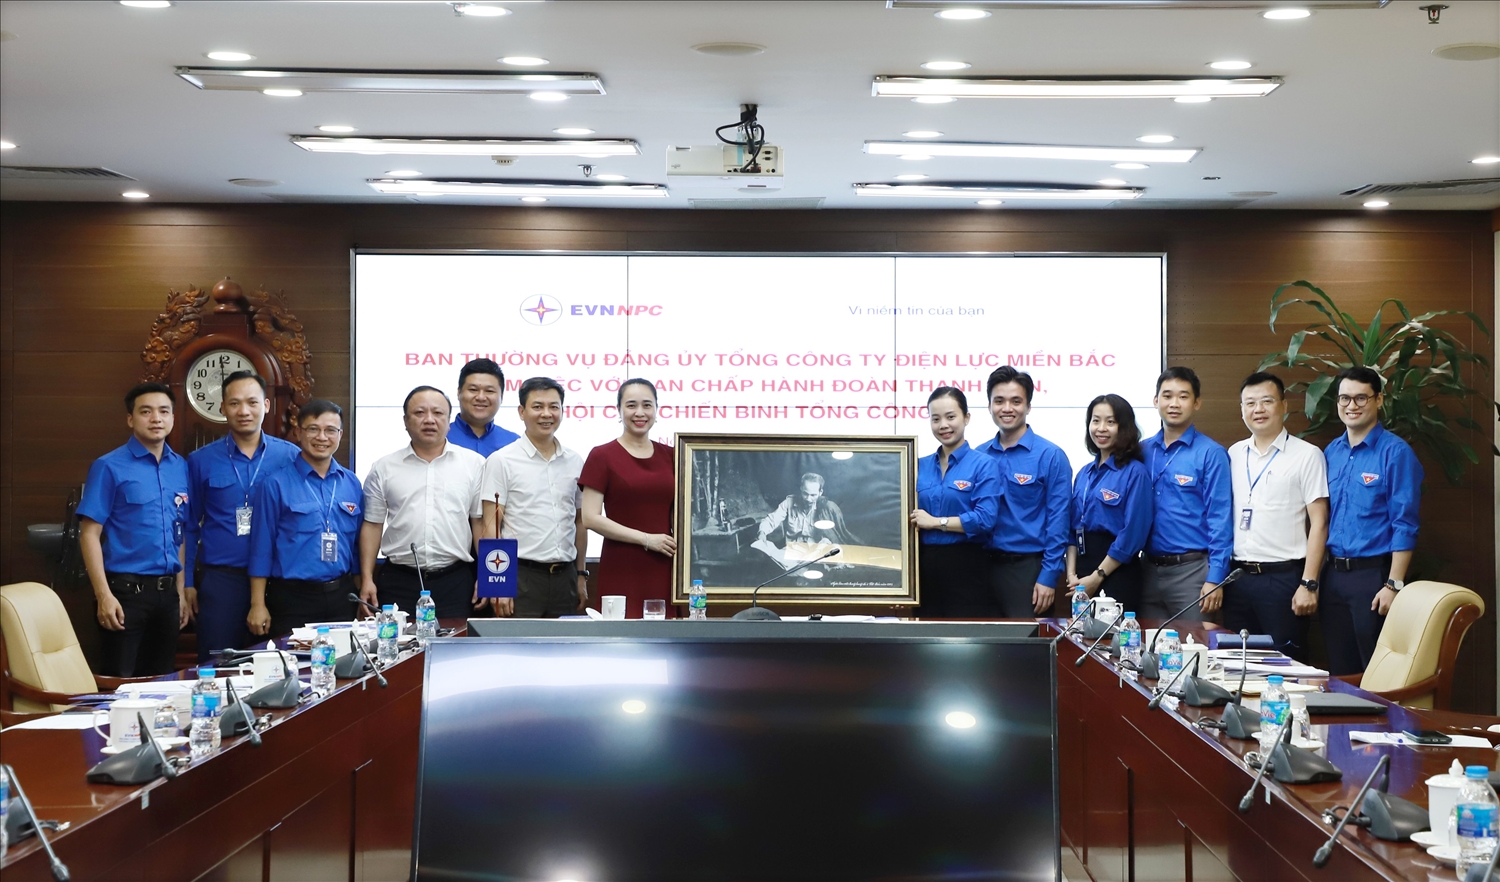 BTV Đảng uỷ EVNNPC tặng bức tranh lưu niệm cho BCH Đoàn thanh niên Tổng công ty khoá I nhiệm kỳ 2017 - 2022